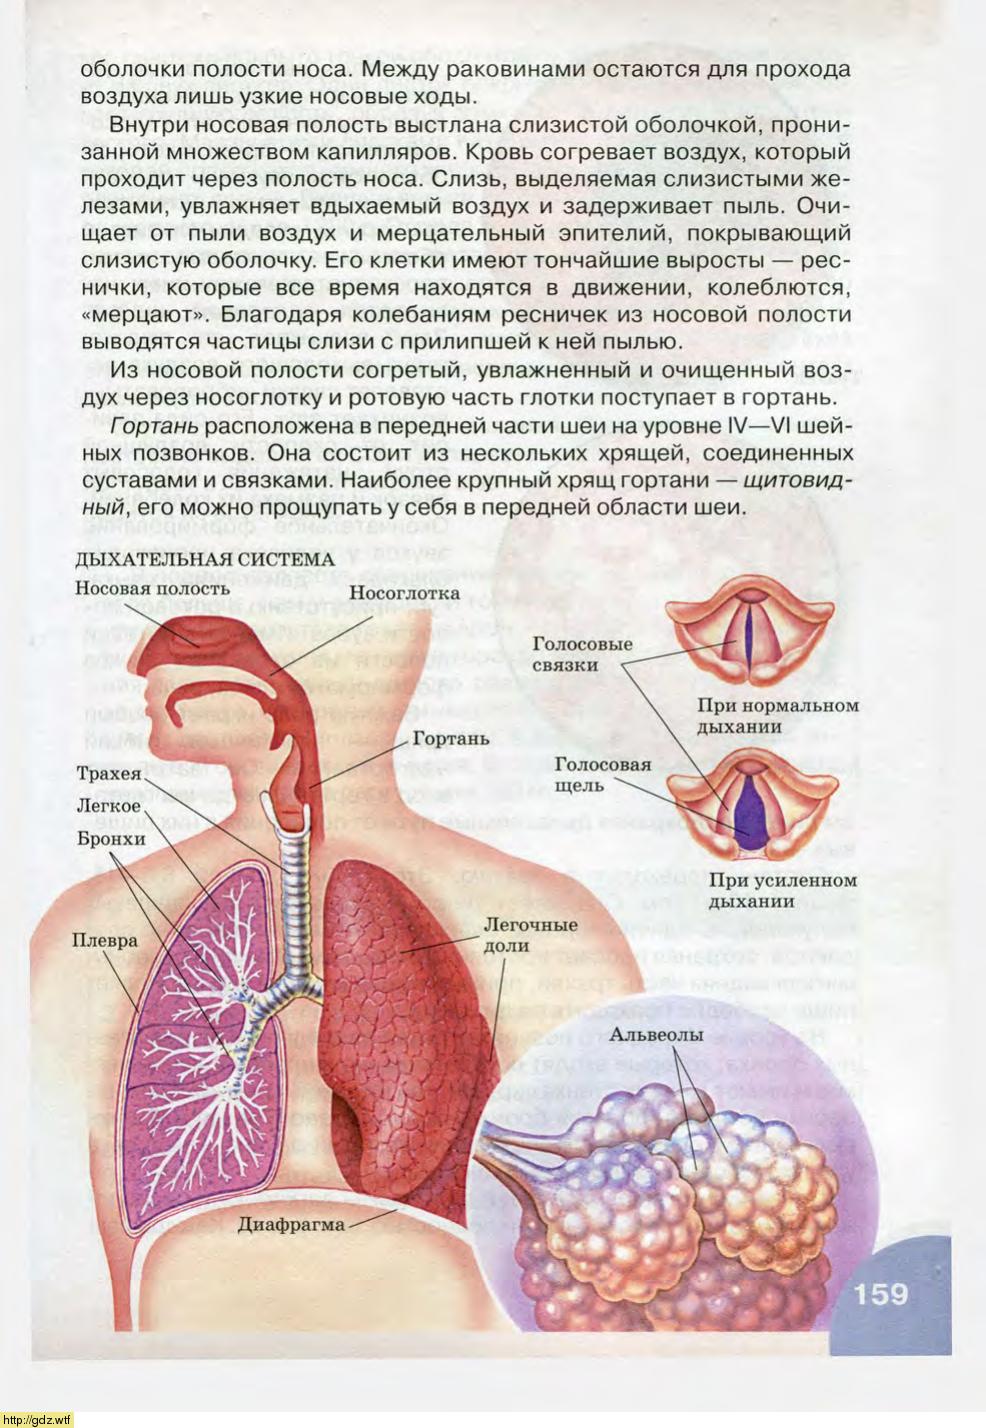 Воздух из гортани попадает в. Строение органов дыхания. Анатомия и физиология органов дыхания. Из гортани воздух поступает в. При вдохе воздух из гортани поступает в.